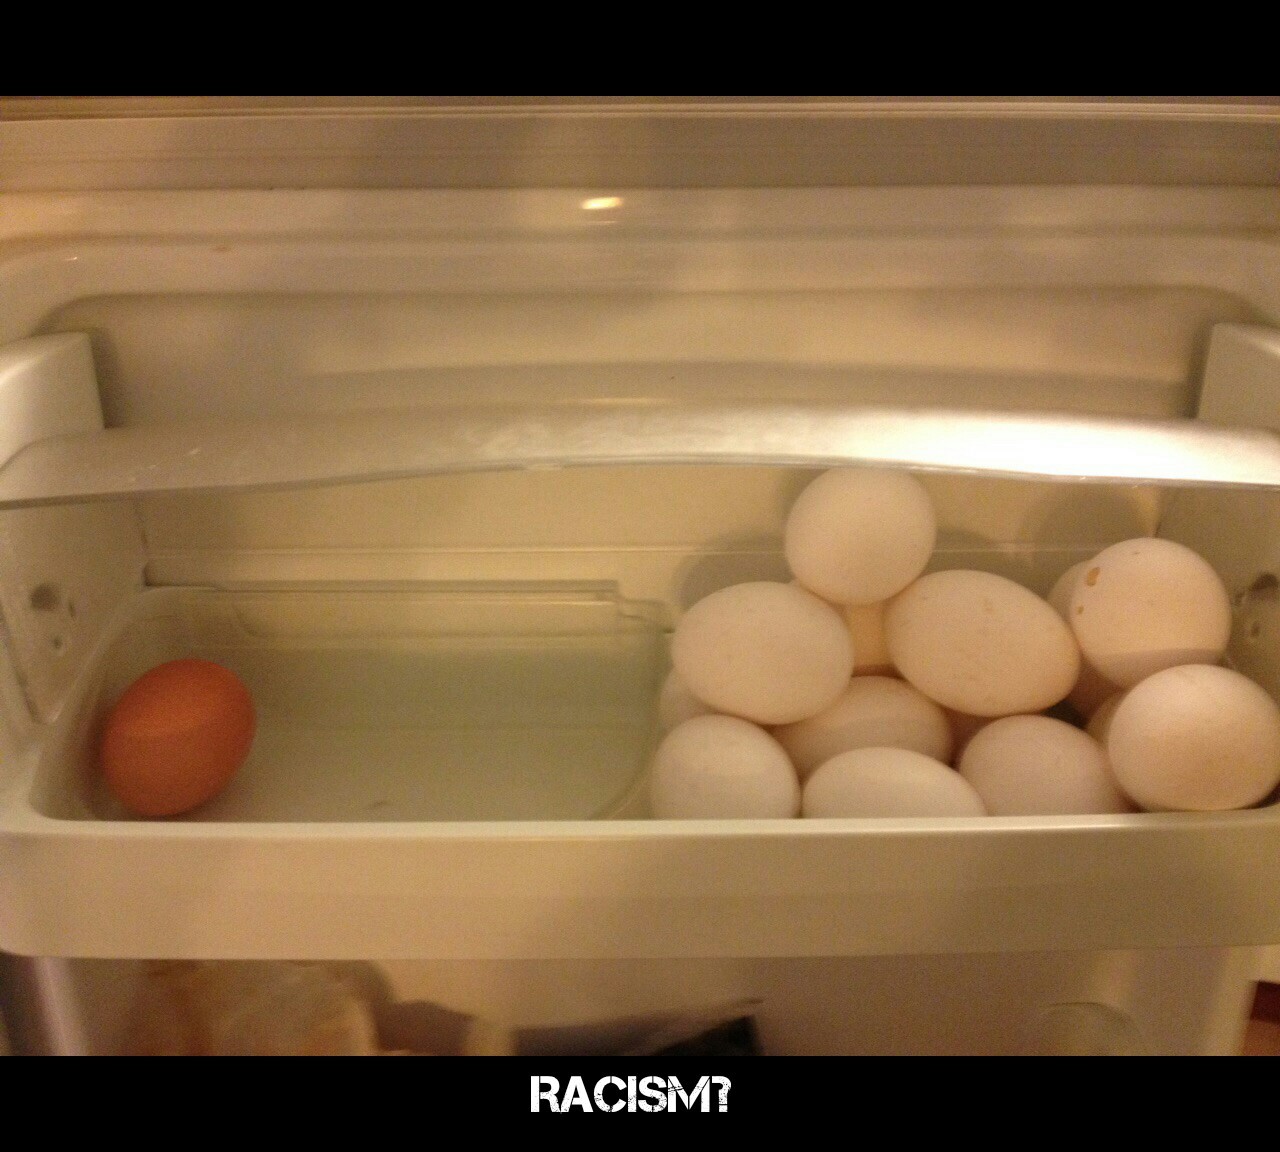 eggs racist - meme